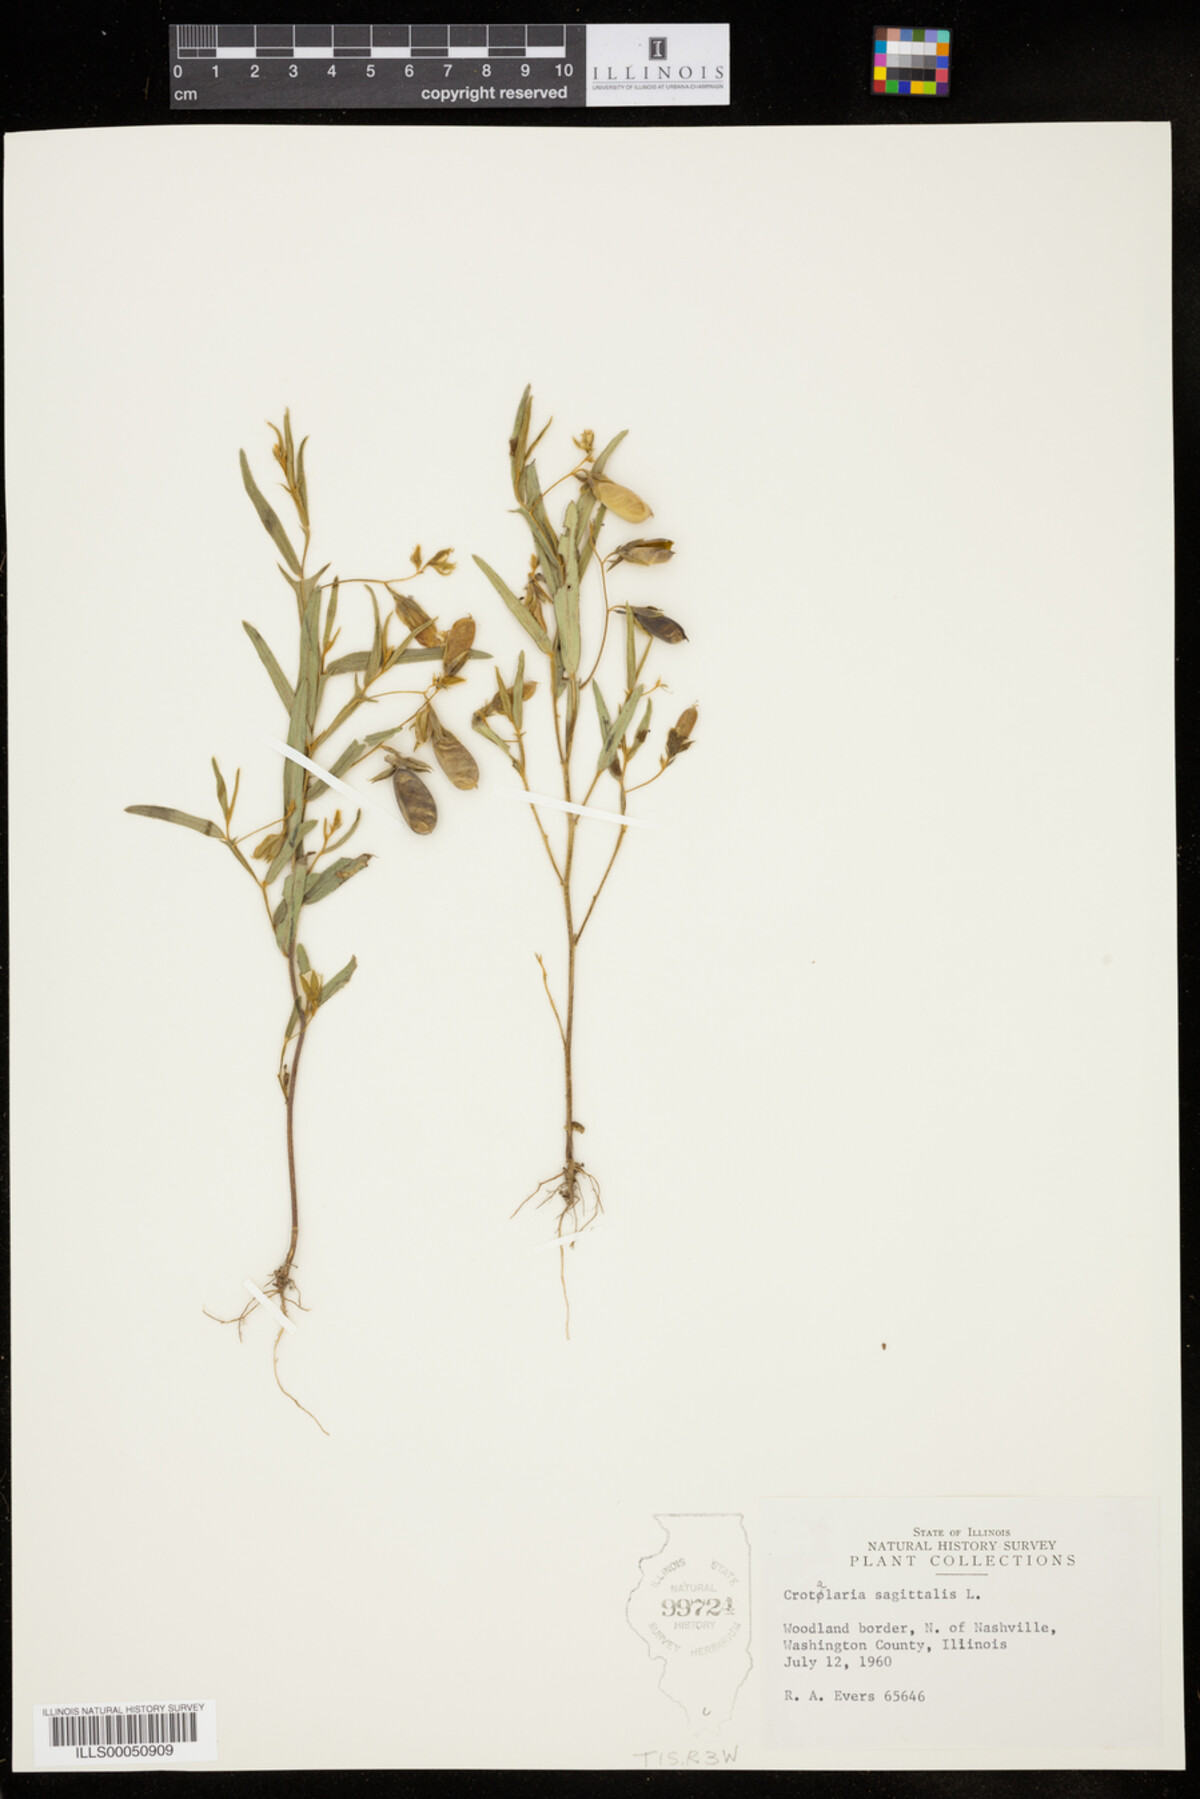 Crotalaria image